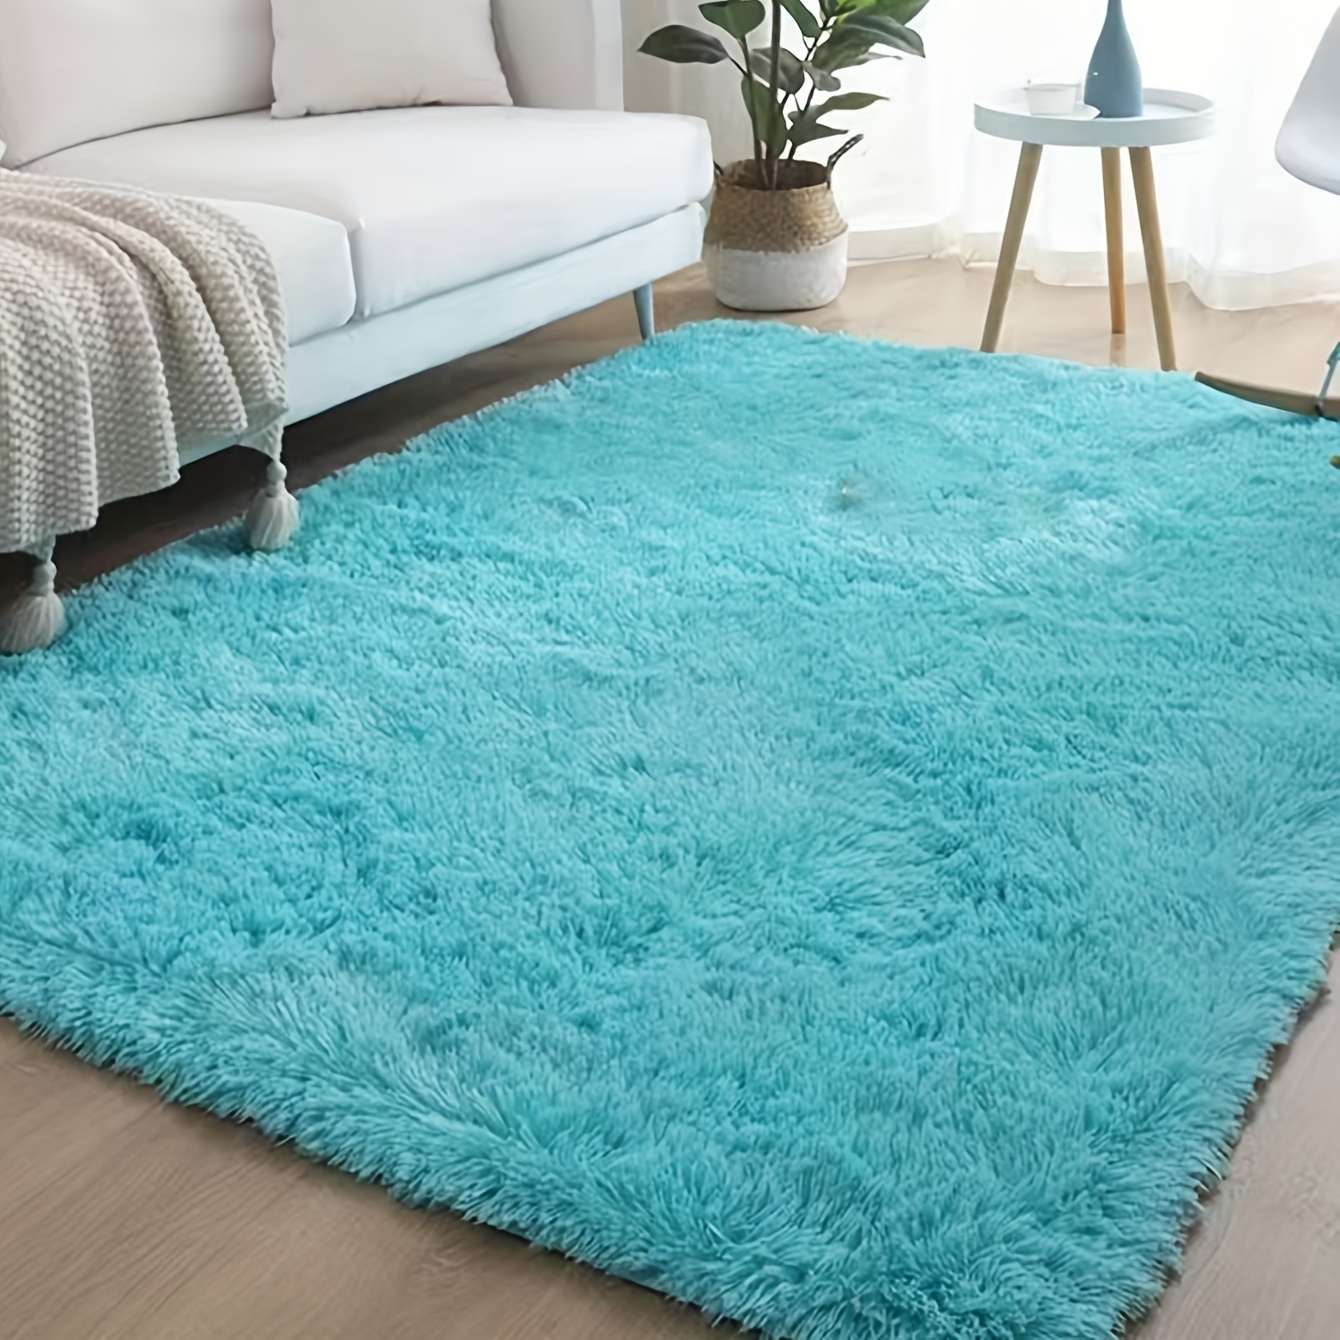  RUGTUDER Alfombra suave azul marino para dormitorio, de 3 x 5,  esponjosas, peludas para sala de estar, alfombras peludas para habitación  de niños, alfombra lanuda para cuarto de bebé, antideslizante, decoración